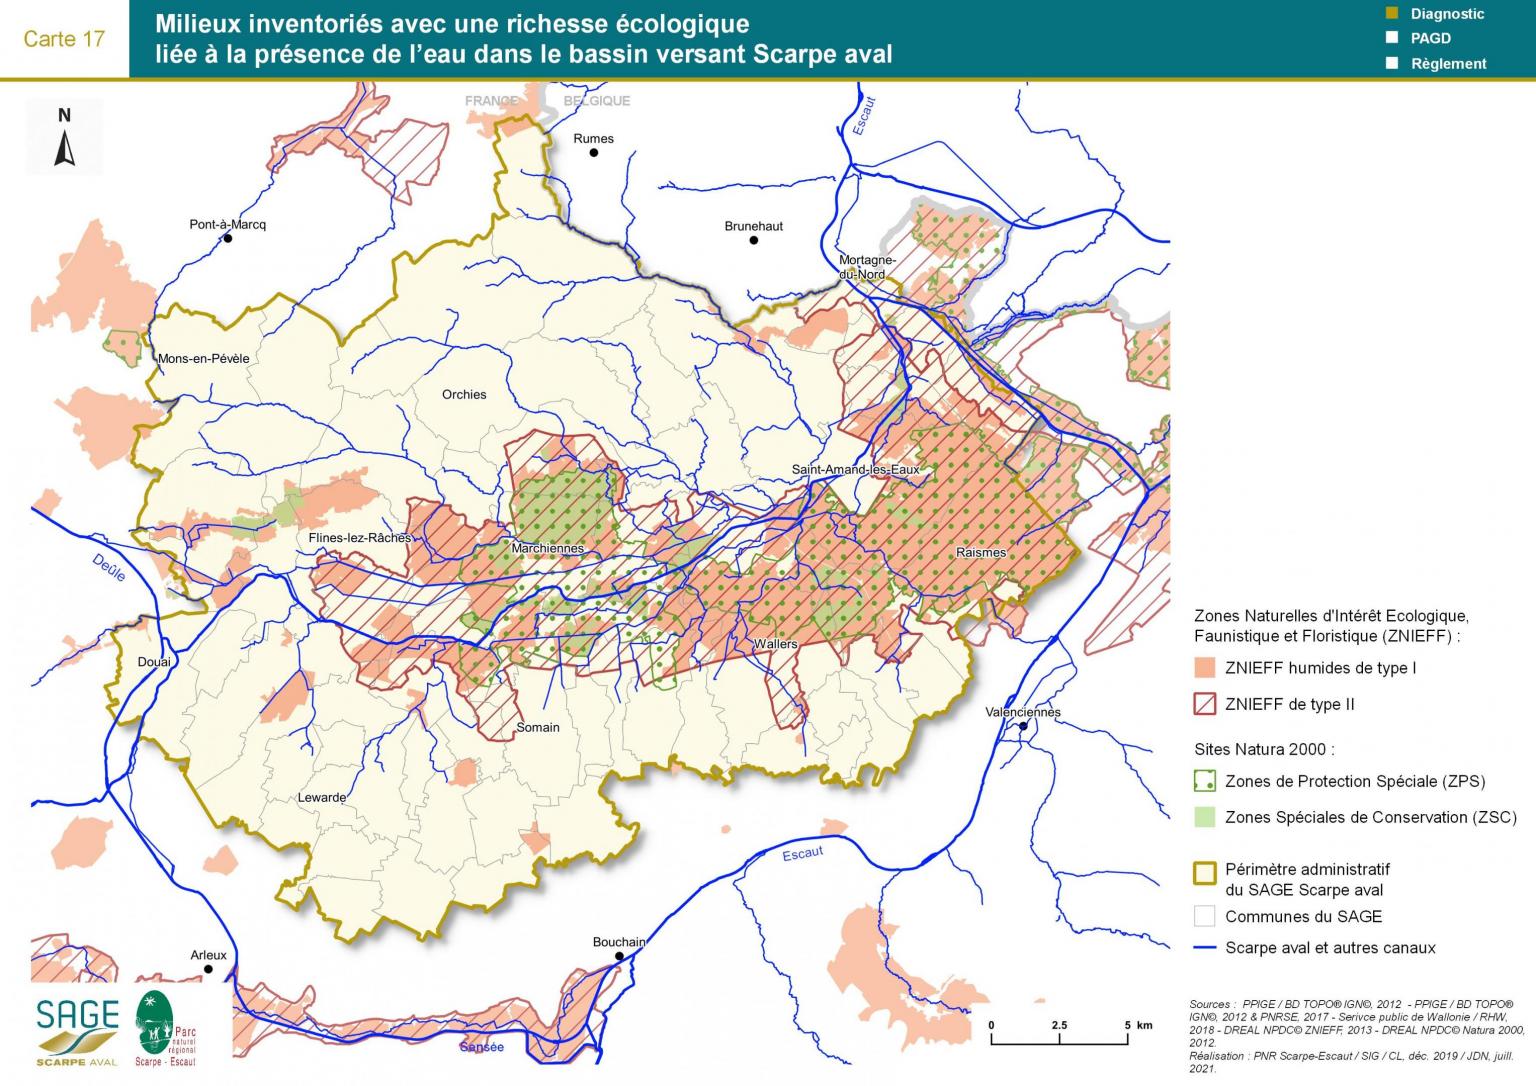 Etat des lieux - Carte 17 : Milieux inventoriés avec une richesse écologique liée à la présence de l’eau dans le bassin versant Scarpe aval